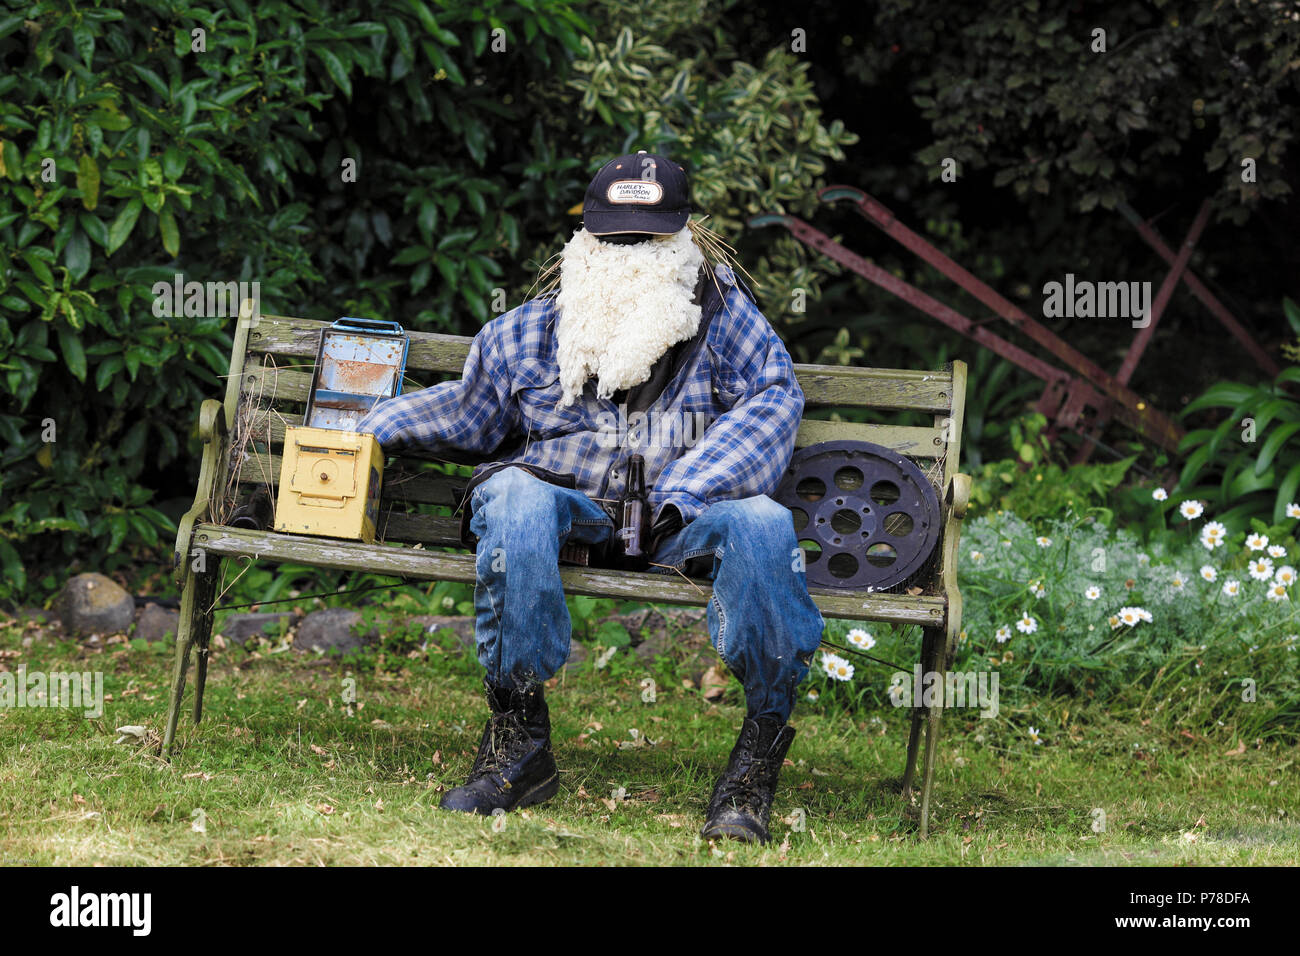 Extravagante maniquí con gran barba blanca sentado en un banco de hierro fundido en Canterbury, Nueva Zelanda Foto de stock